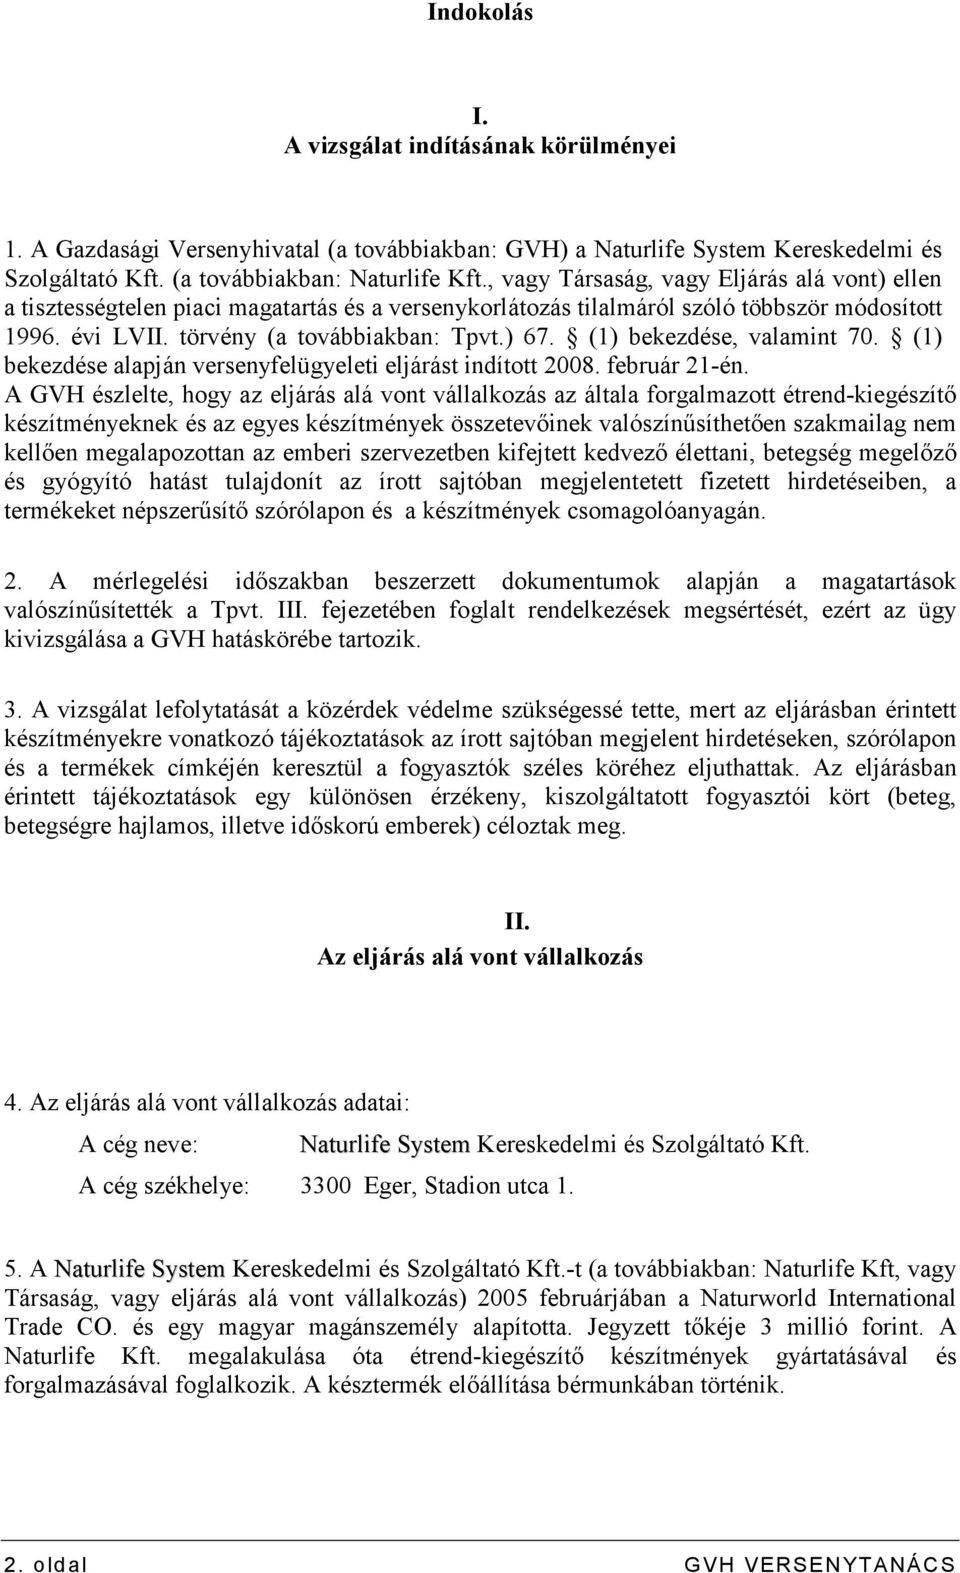 (1) bekezdése, valamint 70. (1) bekezdése alapján versenyfelügyeleti eljárást indított 2008. február 21-én.